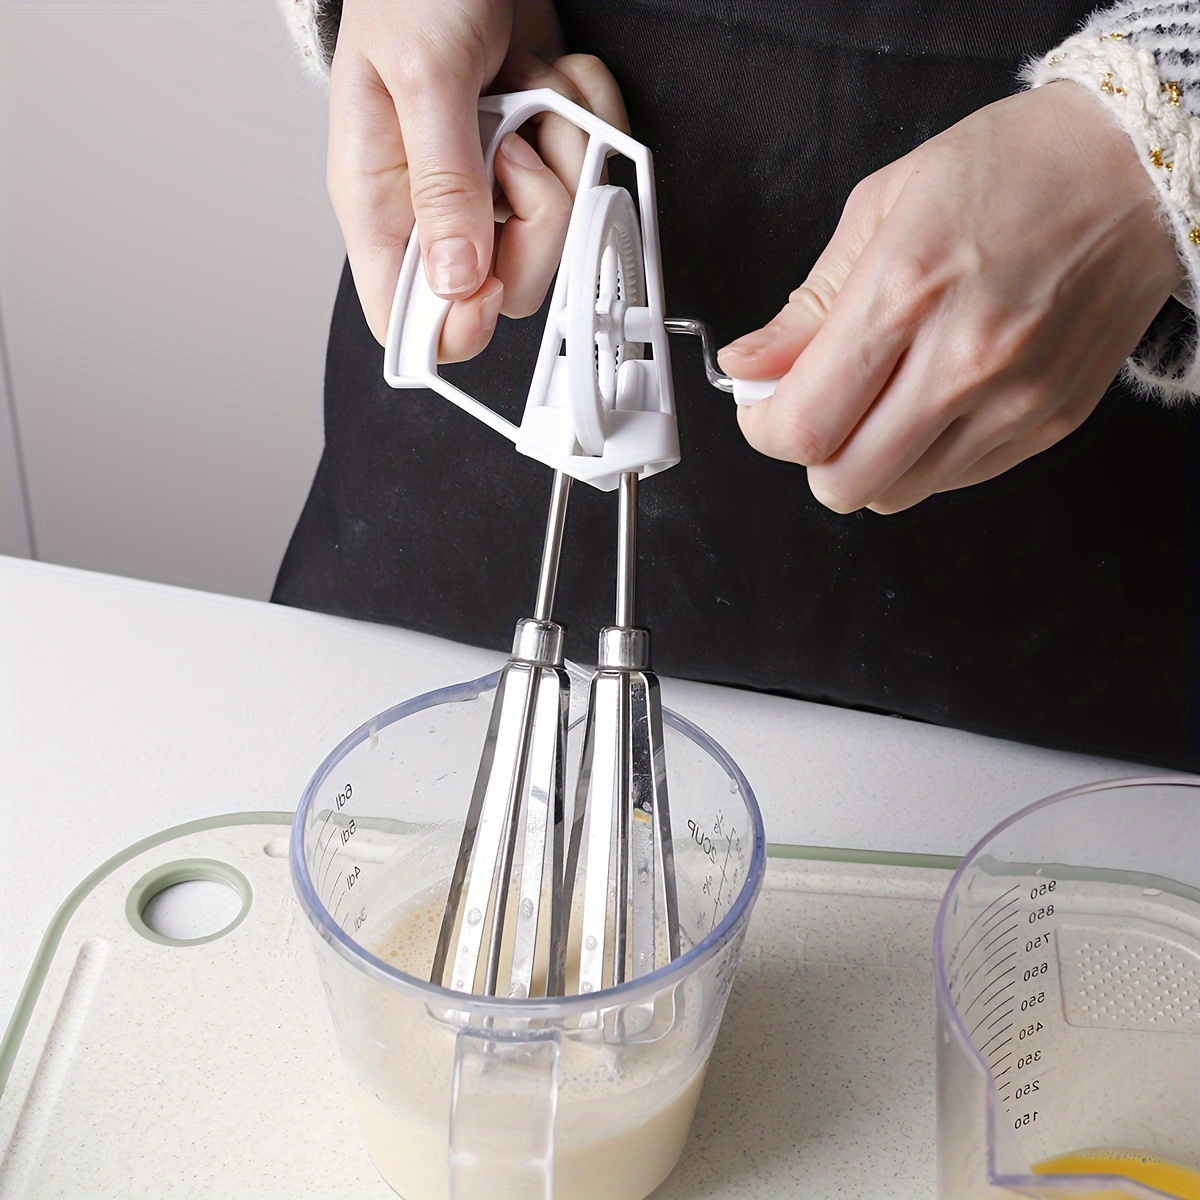 Multifunktionale Schneebesen Werkzeug PP Kunststoff Haushalt Lebensmittel  Clip Backen Mixer Eier Stiring Küche Werkzeuge CGY206 Von 1,11 €